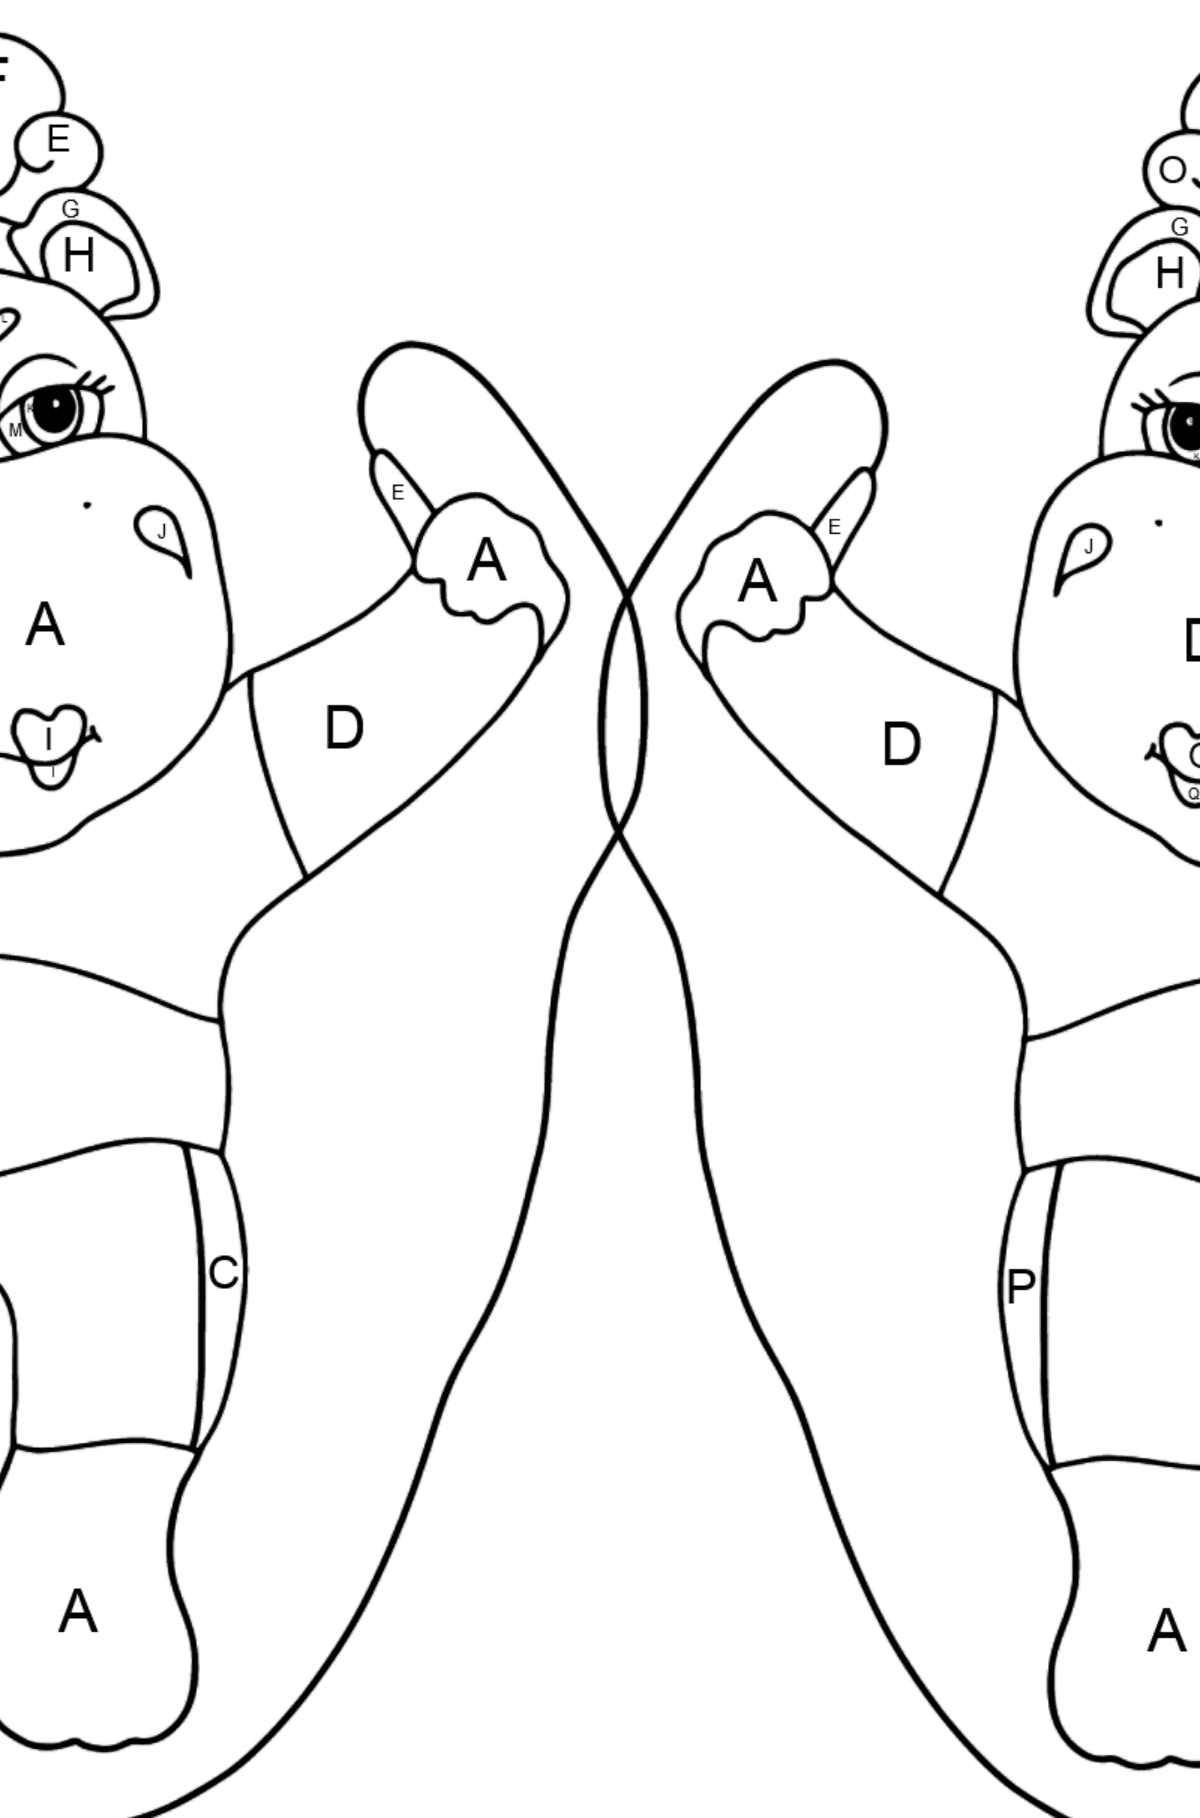 Dibujo de Hipopótamos divertidos (difícil) para colorear - Colorear por Letras para Niños